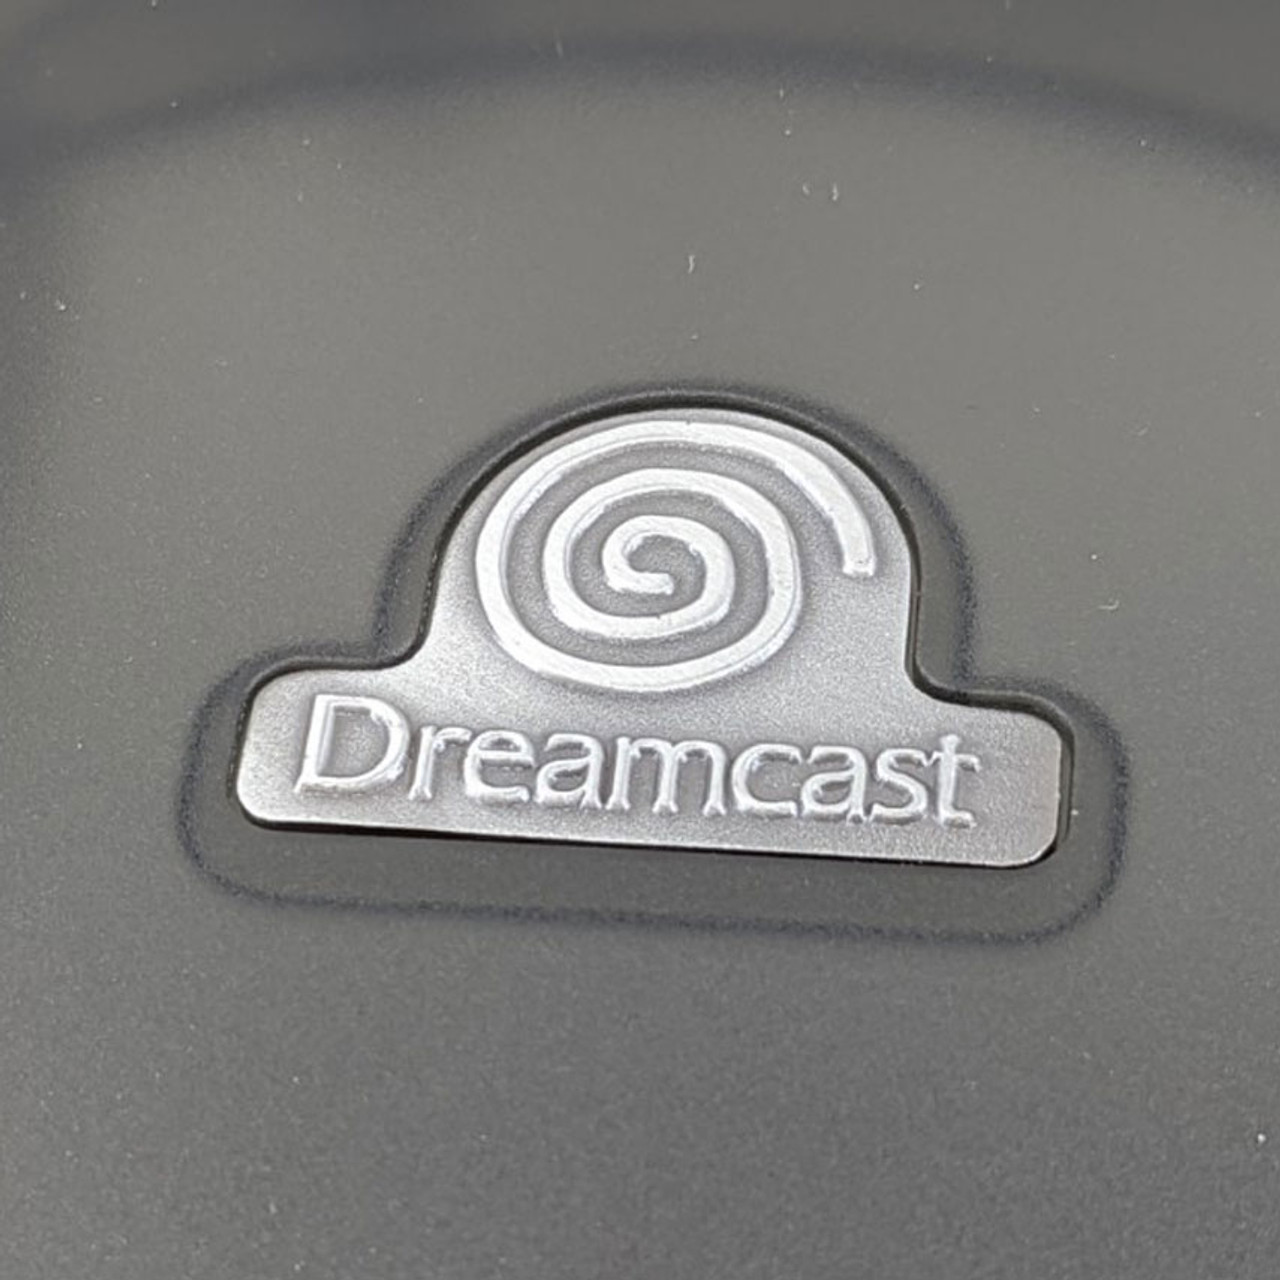 Sega Dreamcast Console - Sega Dreamcast - Sticker